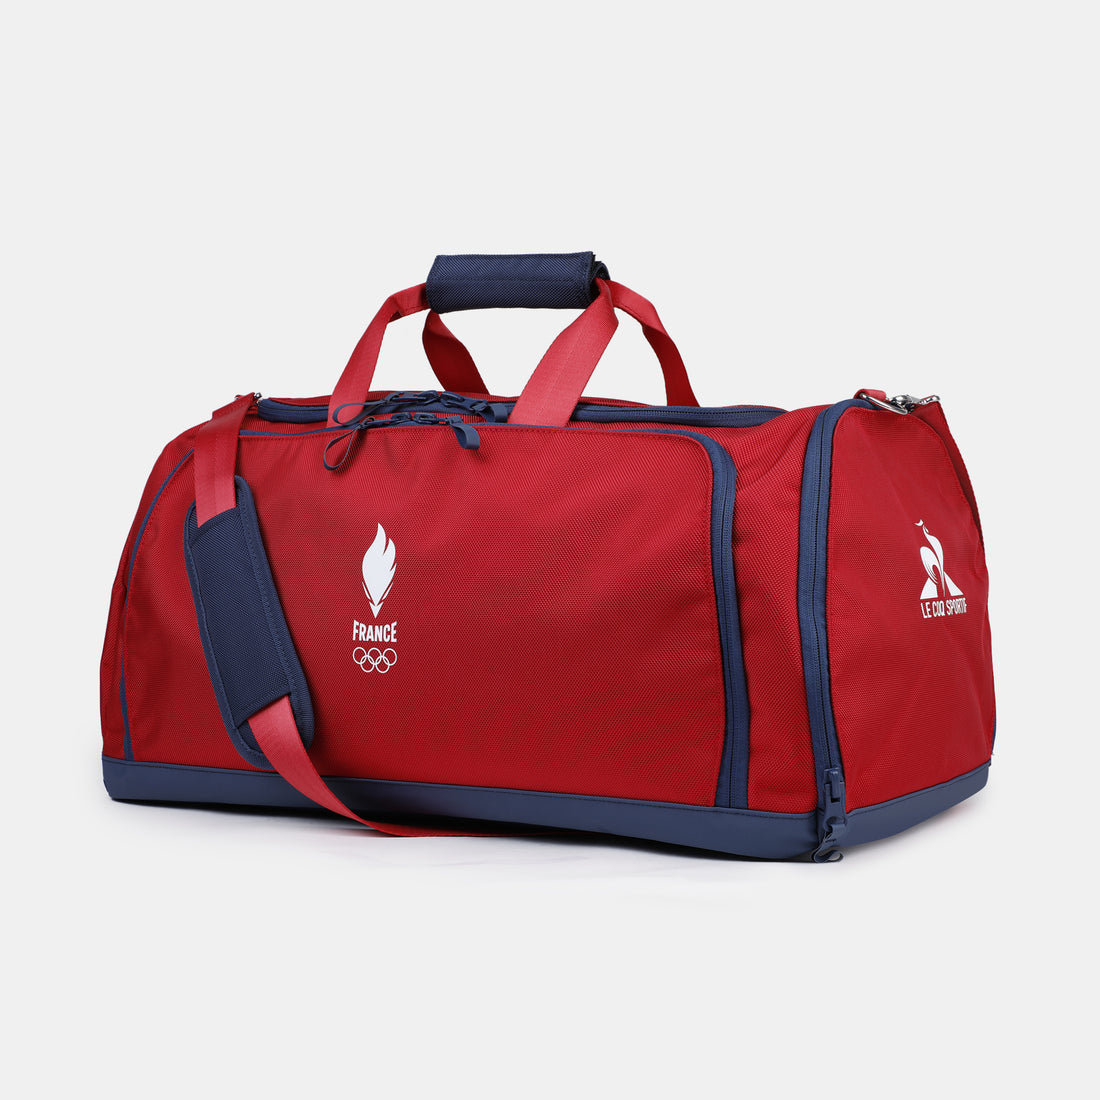 2421296-O TRAINING Sportbag N°1 rio red  | Bag de sport Unisex